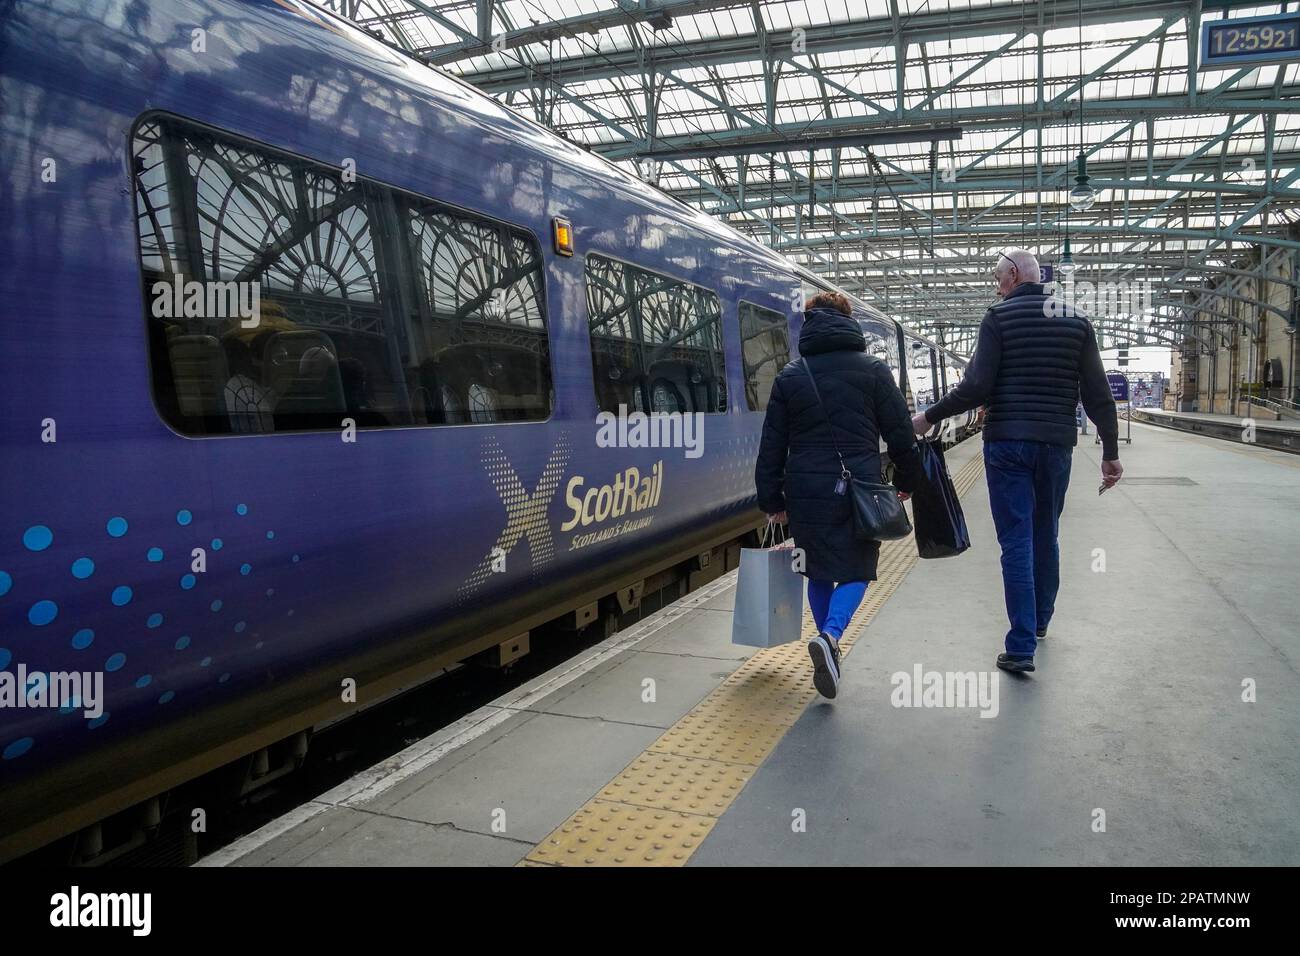 Les passagers se rendent sur un train interurbain ScotRail, gare centrale de Glasgow, Glasgow, Écosse, Royaume-Uni Banque D'Images